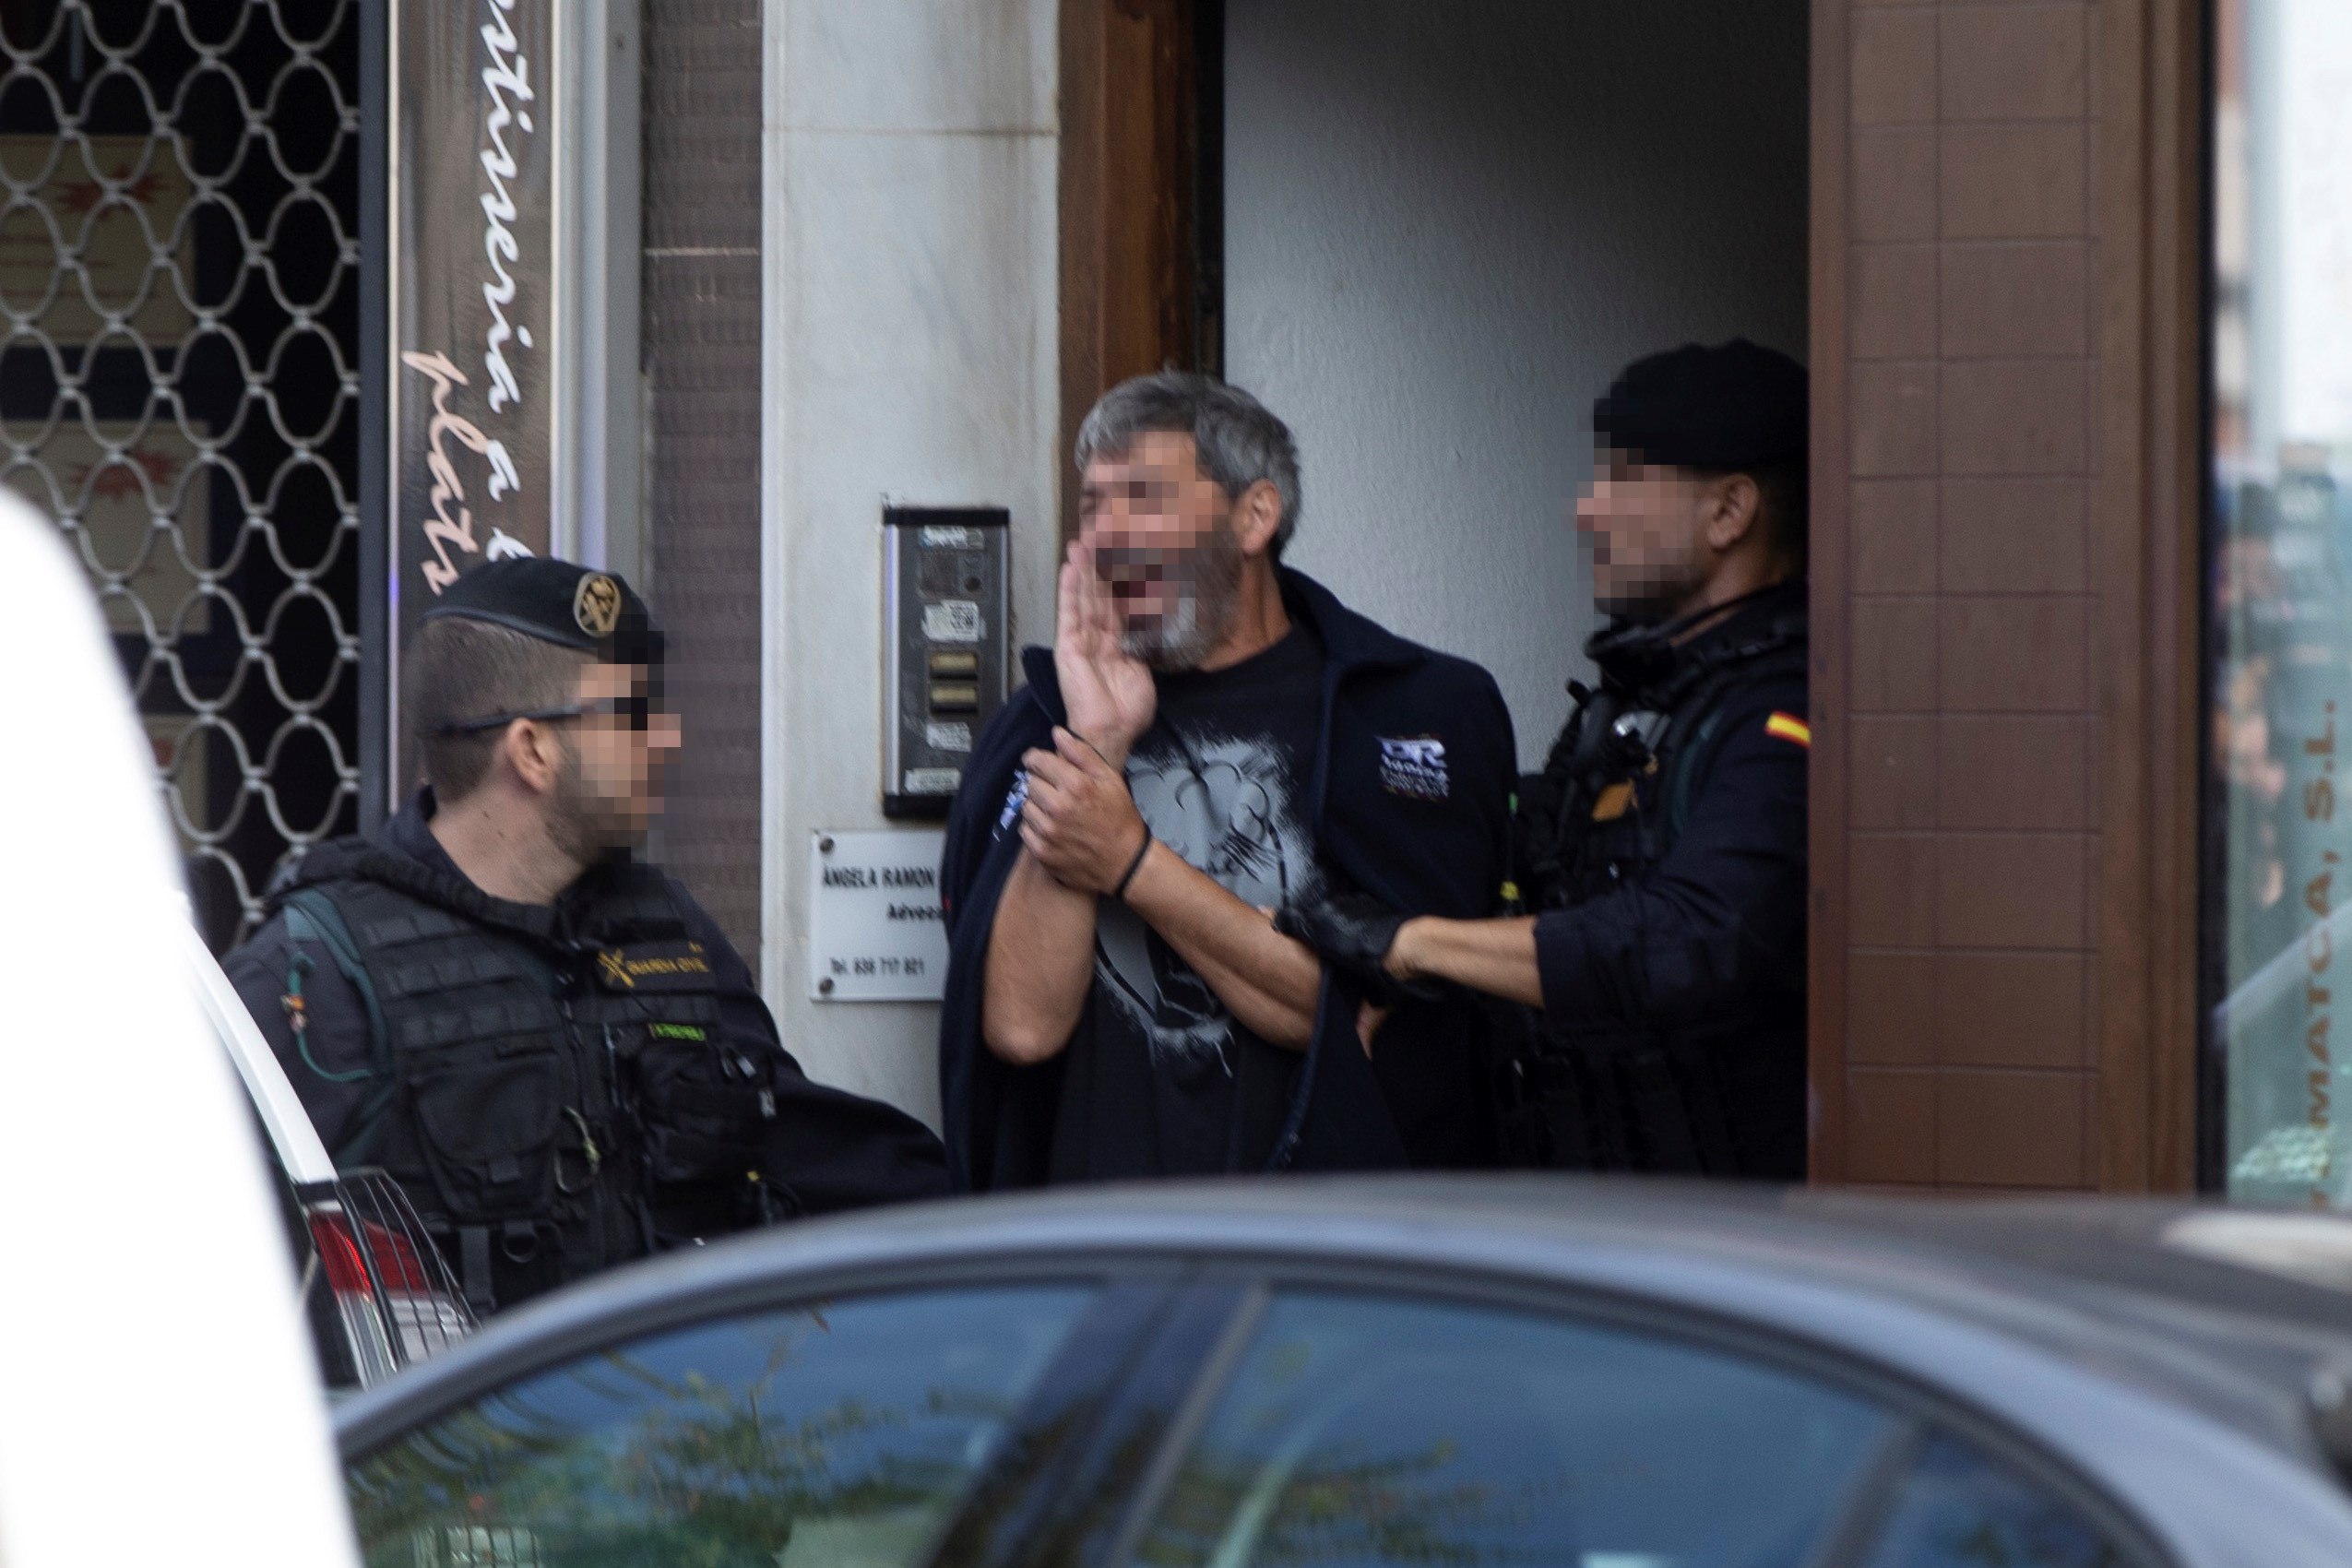 Agentes de la Guardia Civil acompañan a uno de los nueve detenidos durante el registro de un domicilio en Sabadell (Barcelona), por planear acciones violentas. (Foto Prensa Libre: EFE)